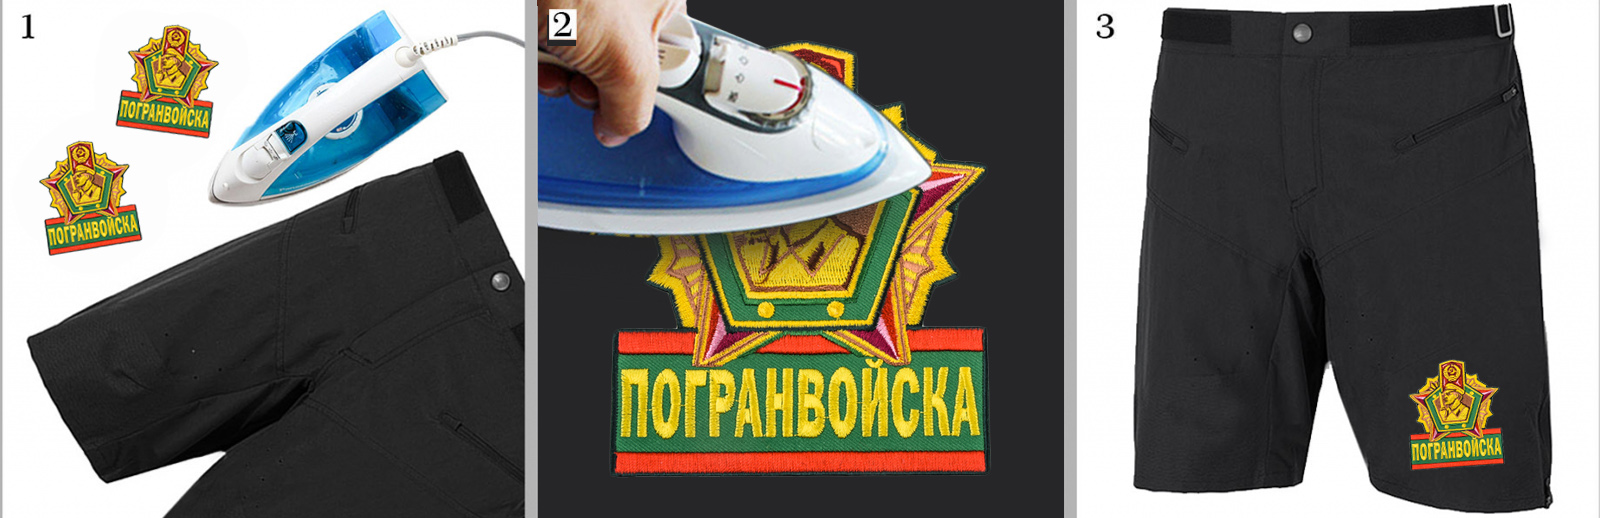 Термошеврон Пограничных войск по цене 199 рублей